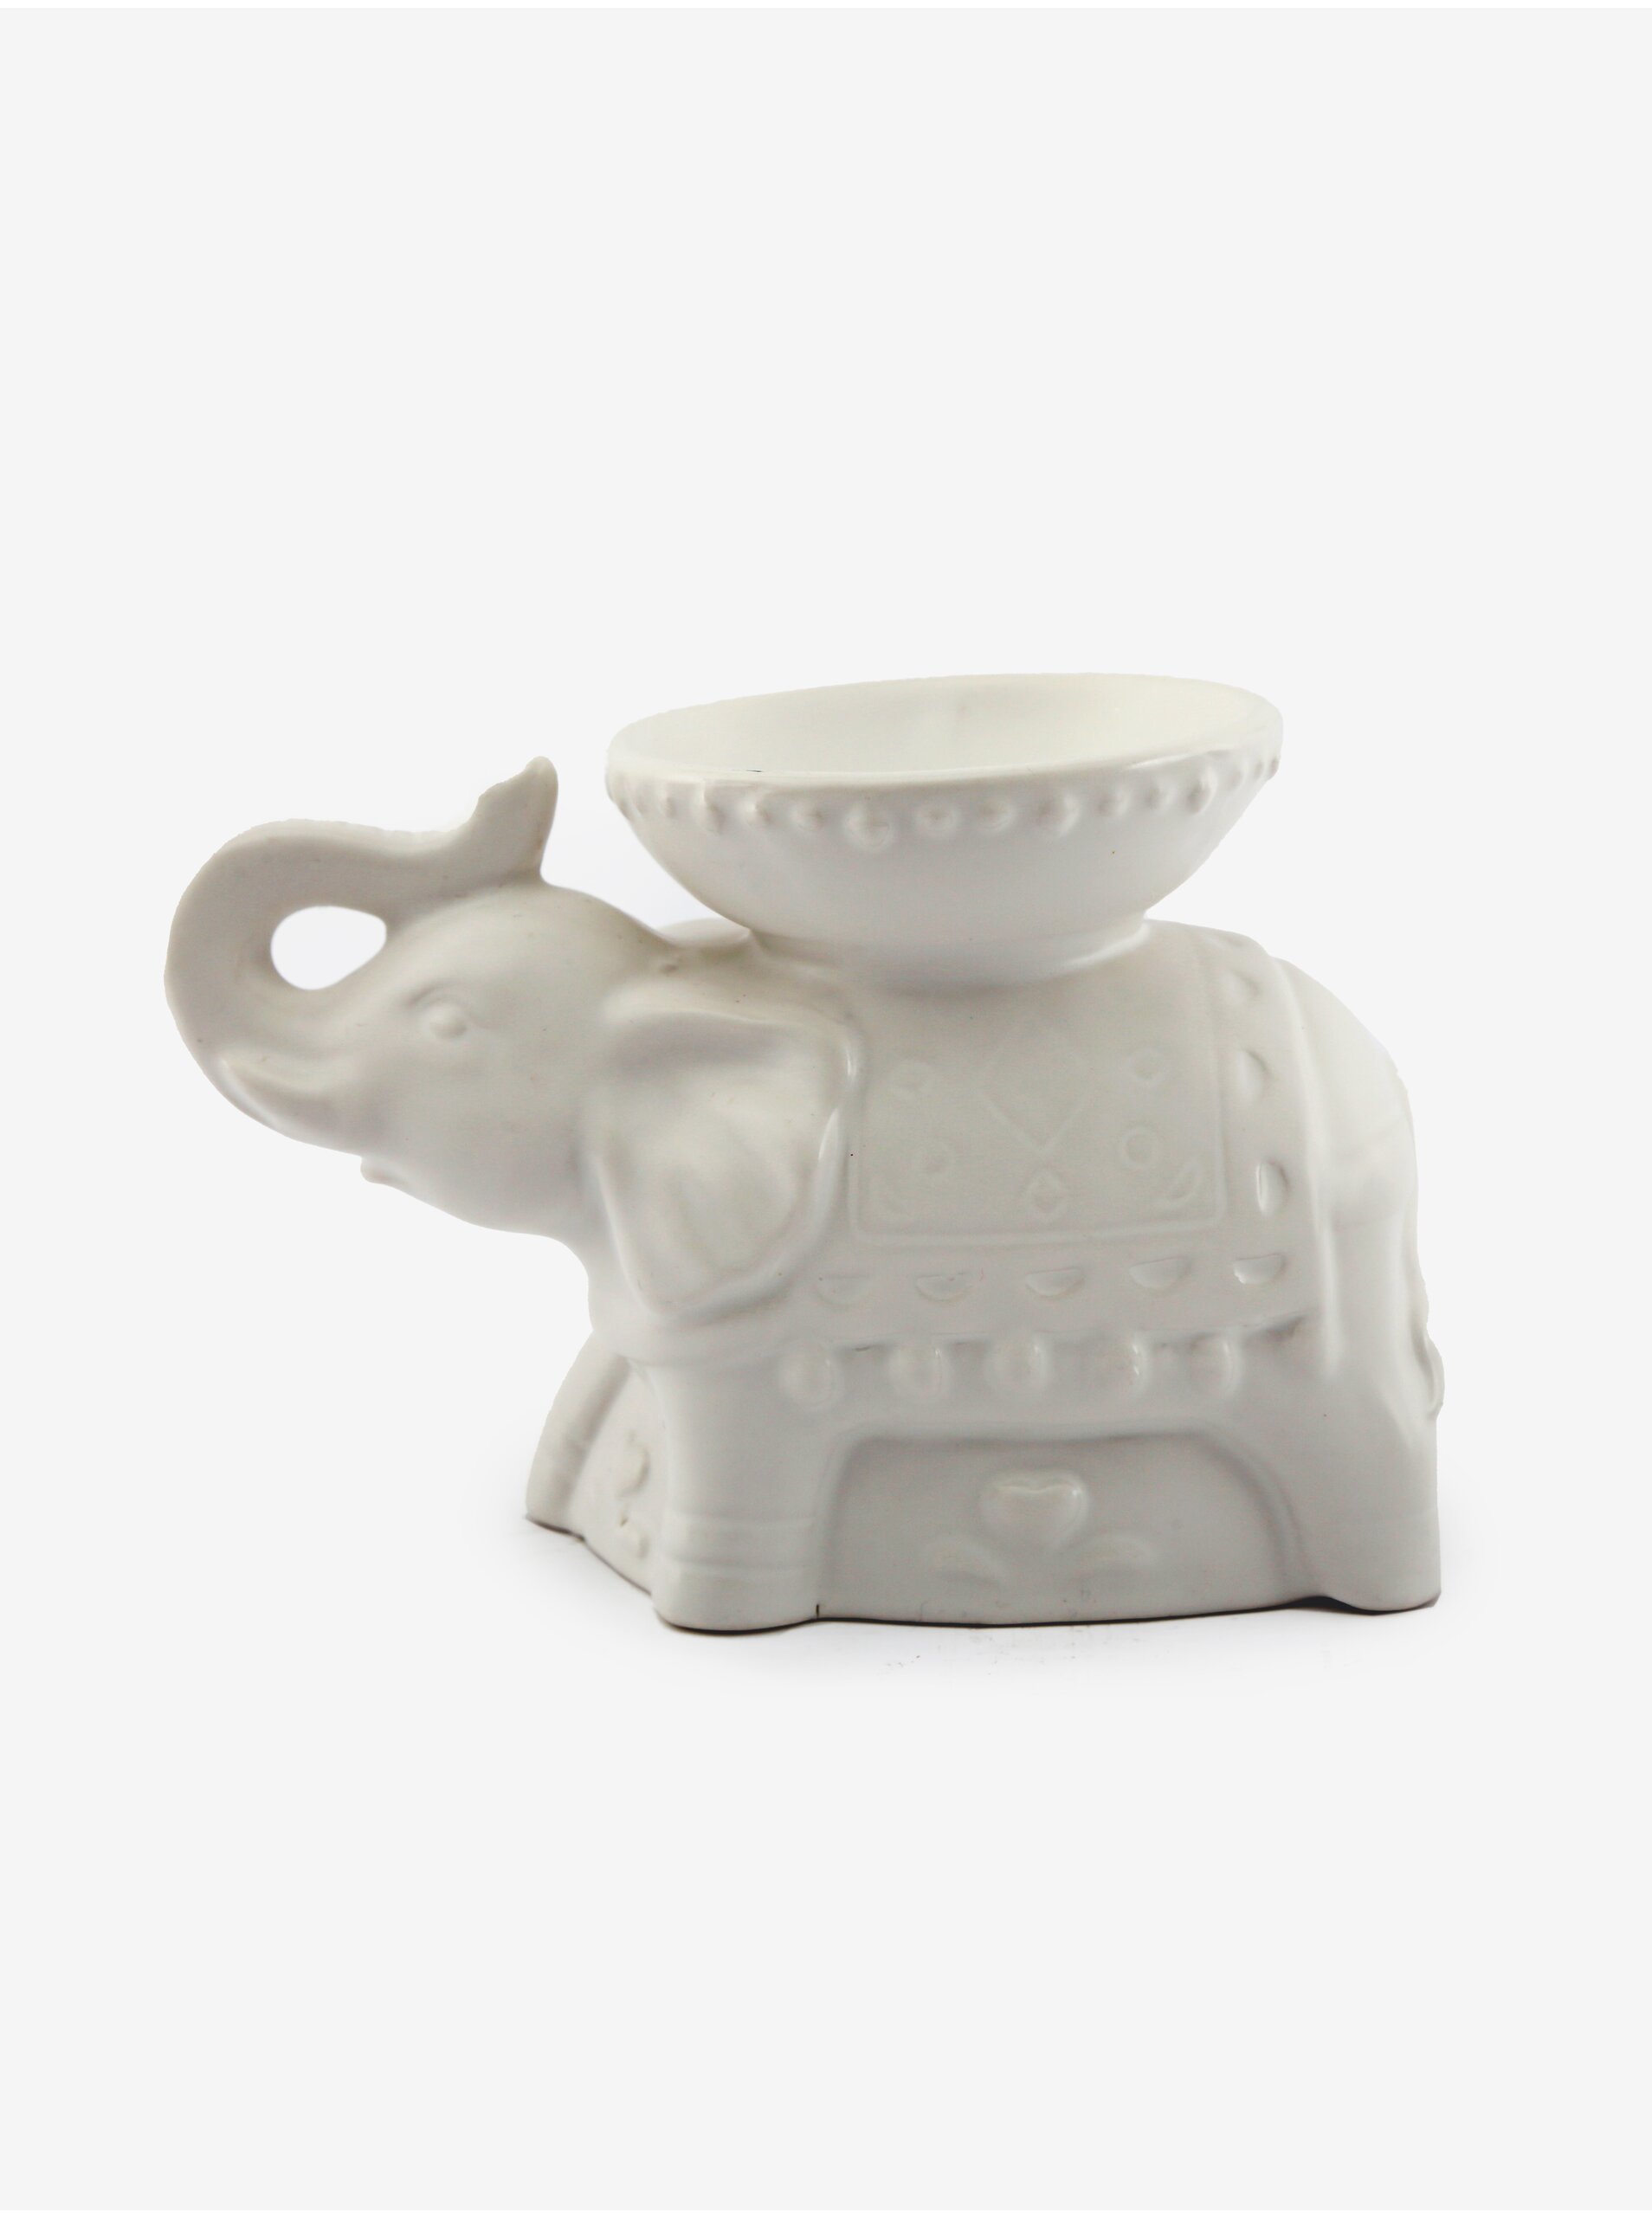 E-shop Biela porcelánová aromalampa na vonný olej/vosk SIFCON Slon